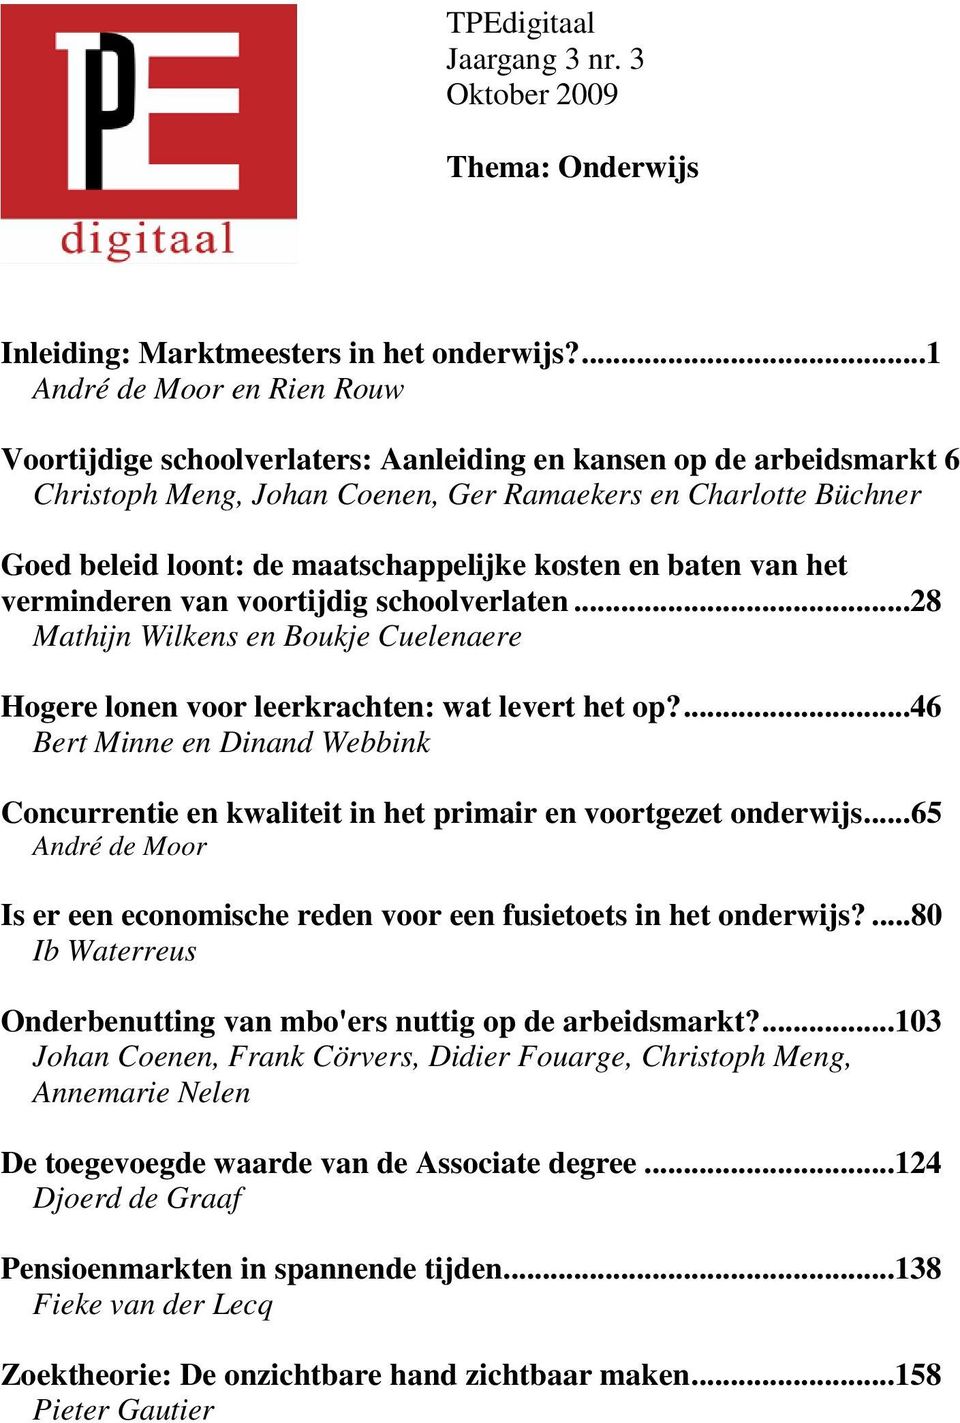 maatschappelijke kosten en baten van het verminderen van voortijdig schoolverlaten...28 Mathijn Wilkens en Boukje Cuelenaere Hogere lonen voor leerkrachten: wat levert het op?